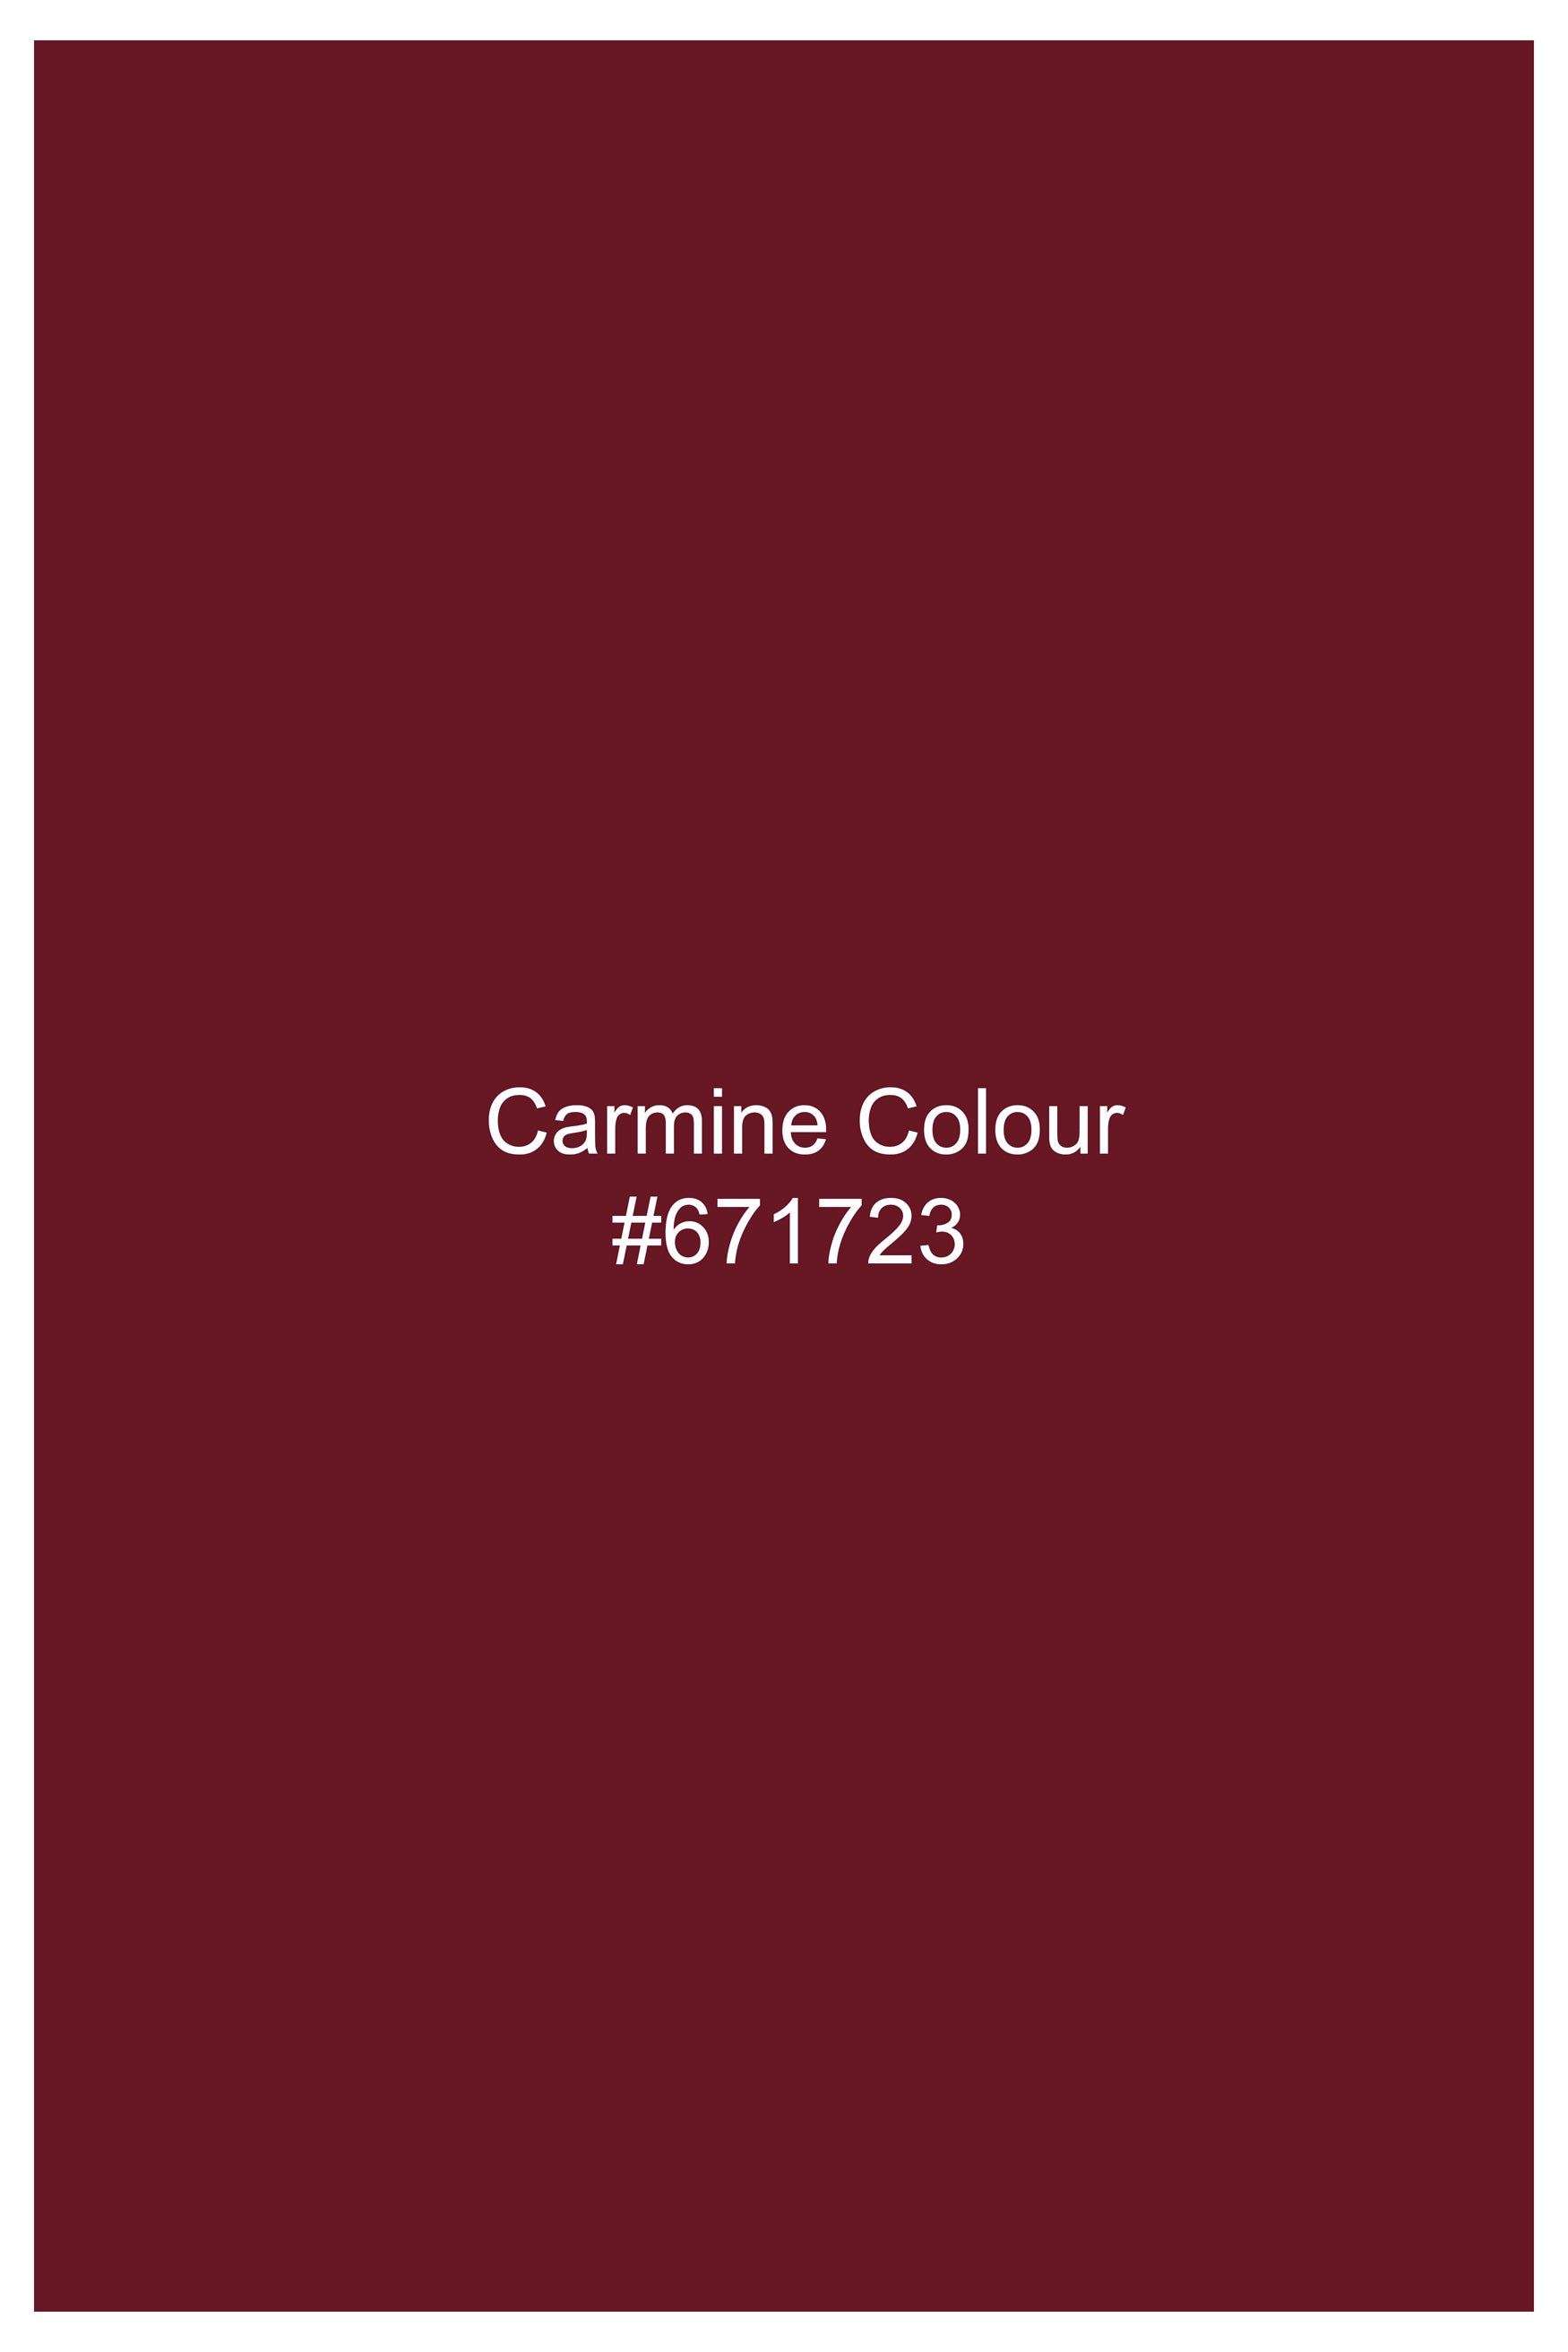 Carmine Maroon Dobby Textured Giza Cotton Shorts SR384-28, SR384-30, SR384-32, SR384-34, SR384-36, SR384-38, SR384-40, SR384-42, SR384-44